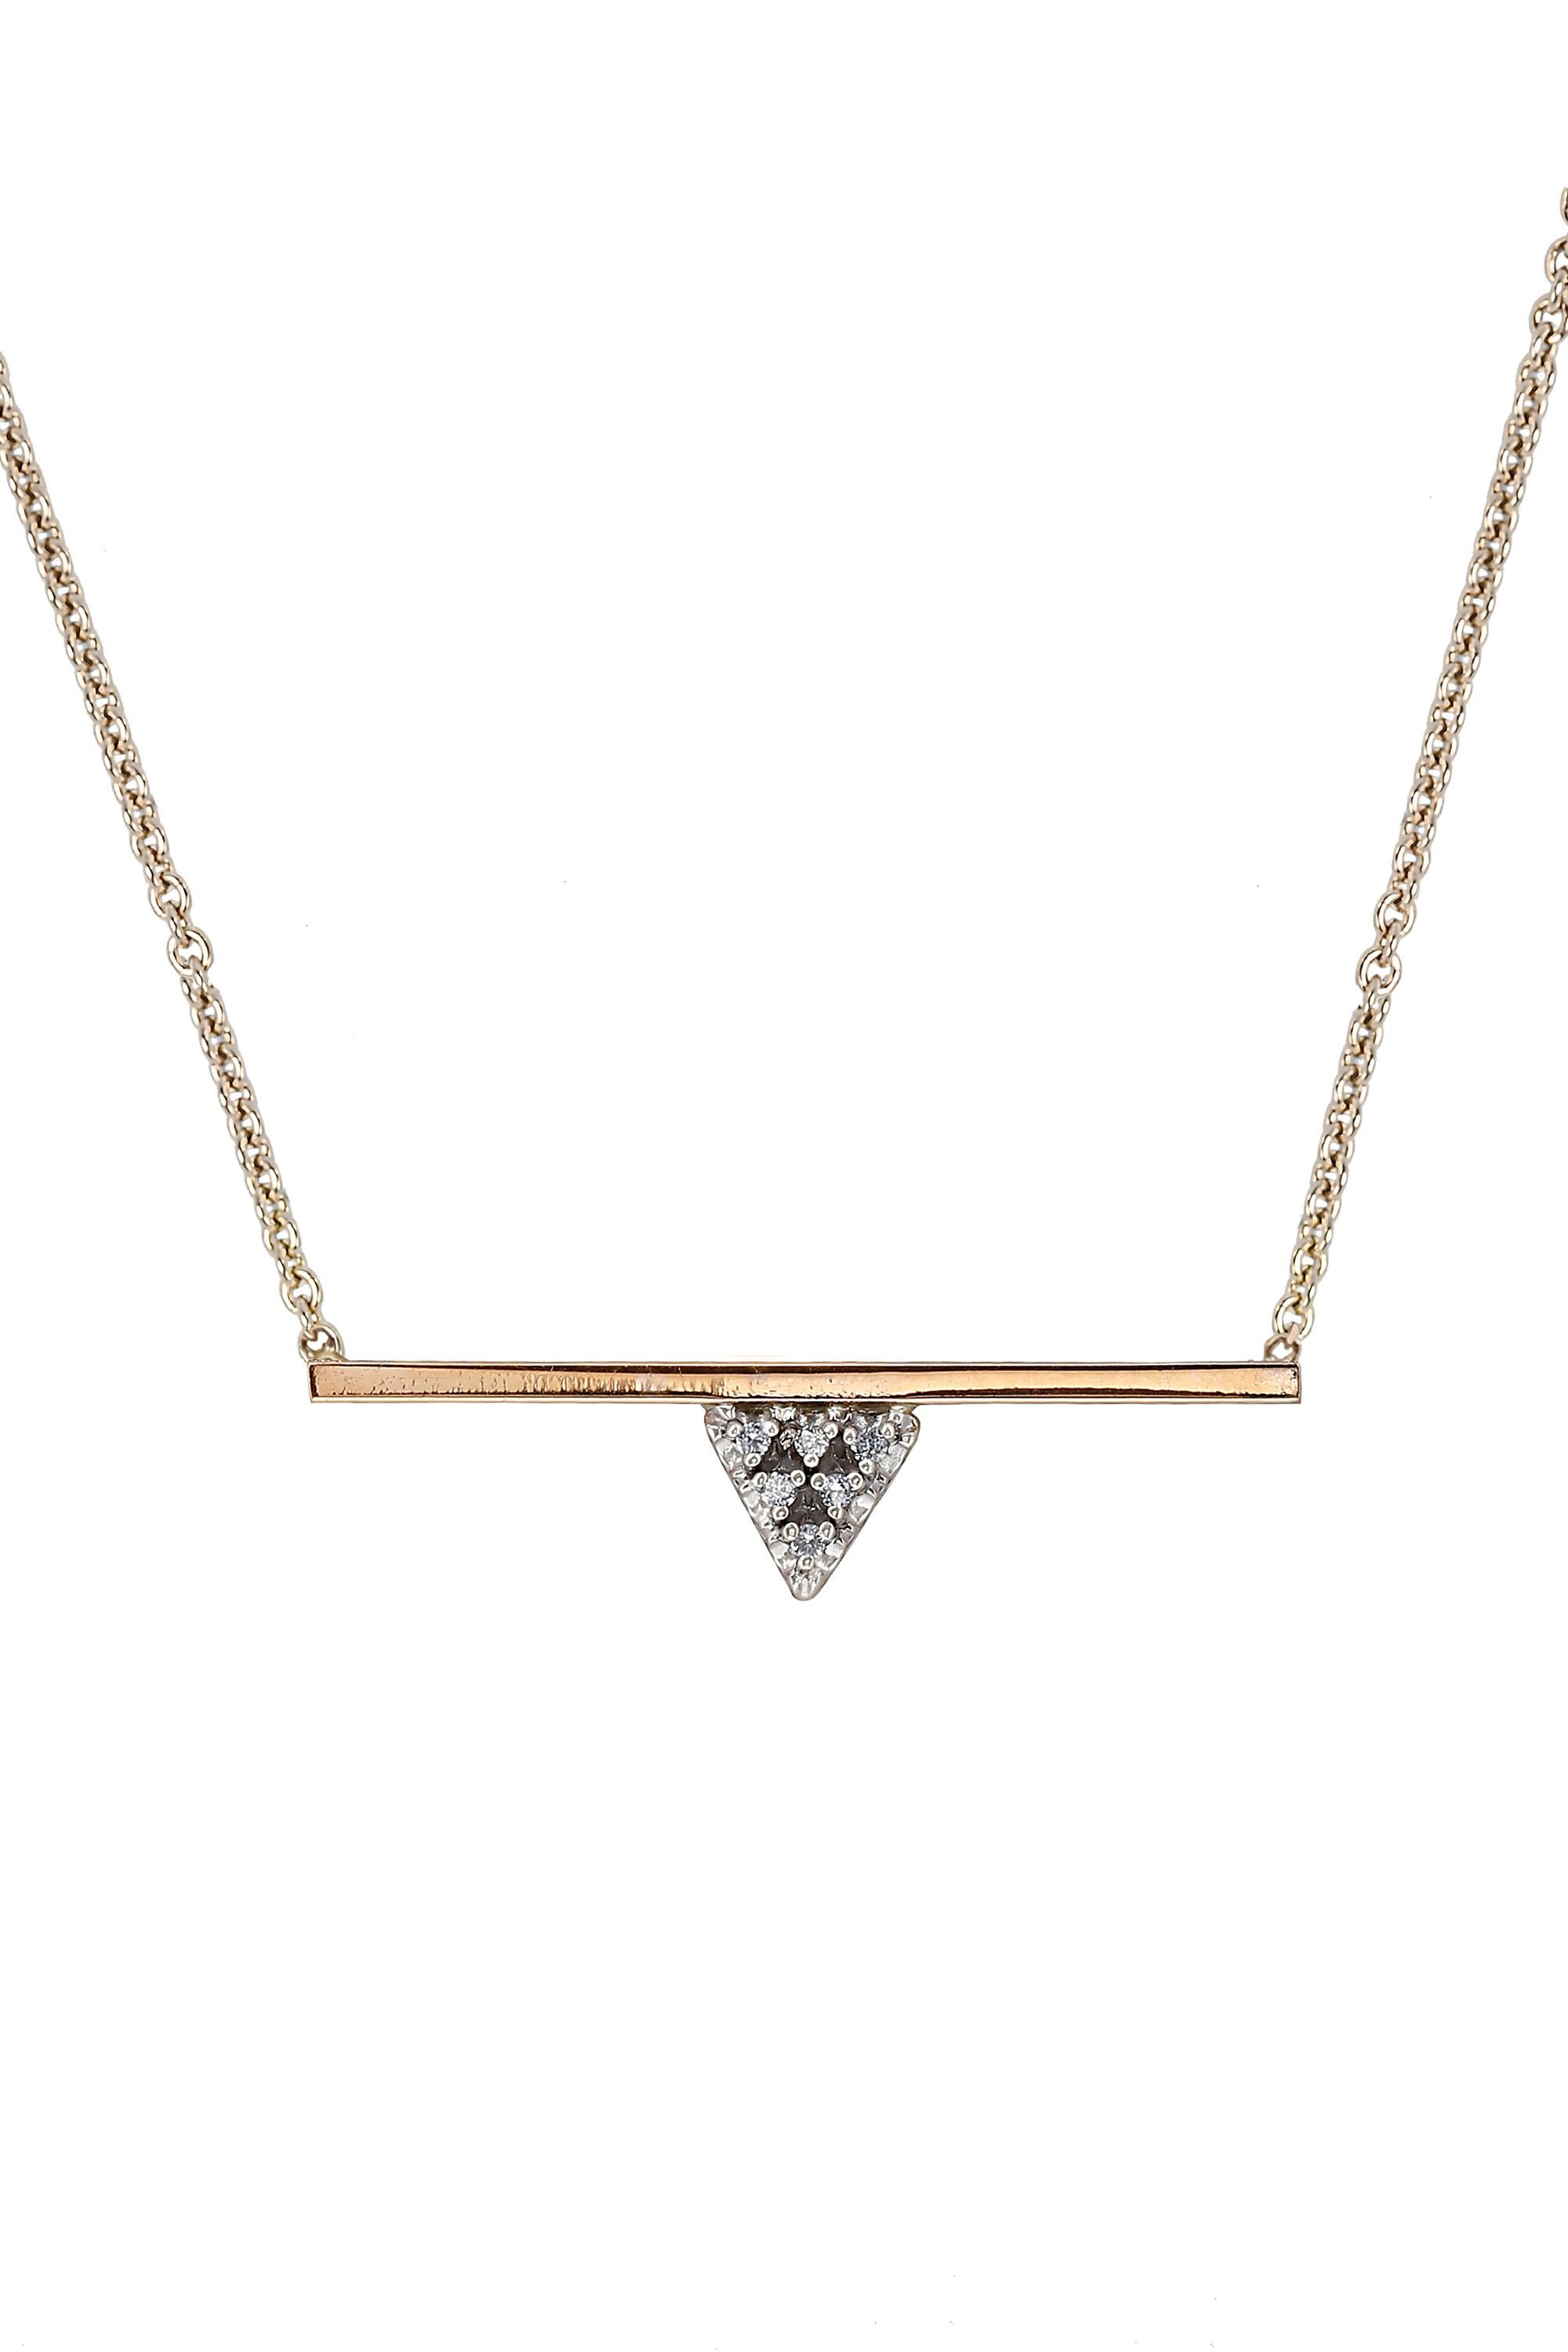 Ce collier triangulaire moderne et éblouissant en or jaune 14K avec barre de diamants est conçu par Zoe Chicco. Ce collier à pendentif en or jaune 14k de 30 mm est orné de 6 diamants blancs ronds de taille brillant pesant environ 0,06ctw. Le collier